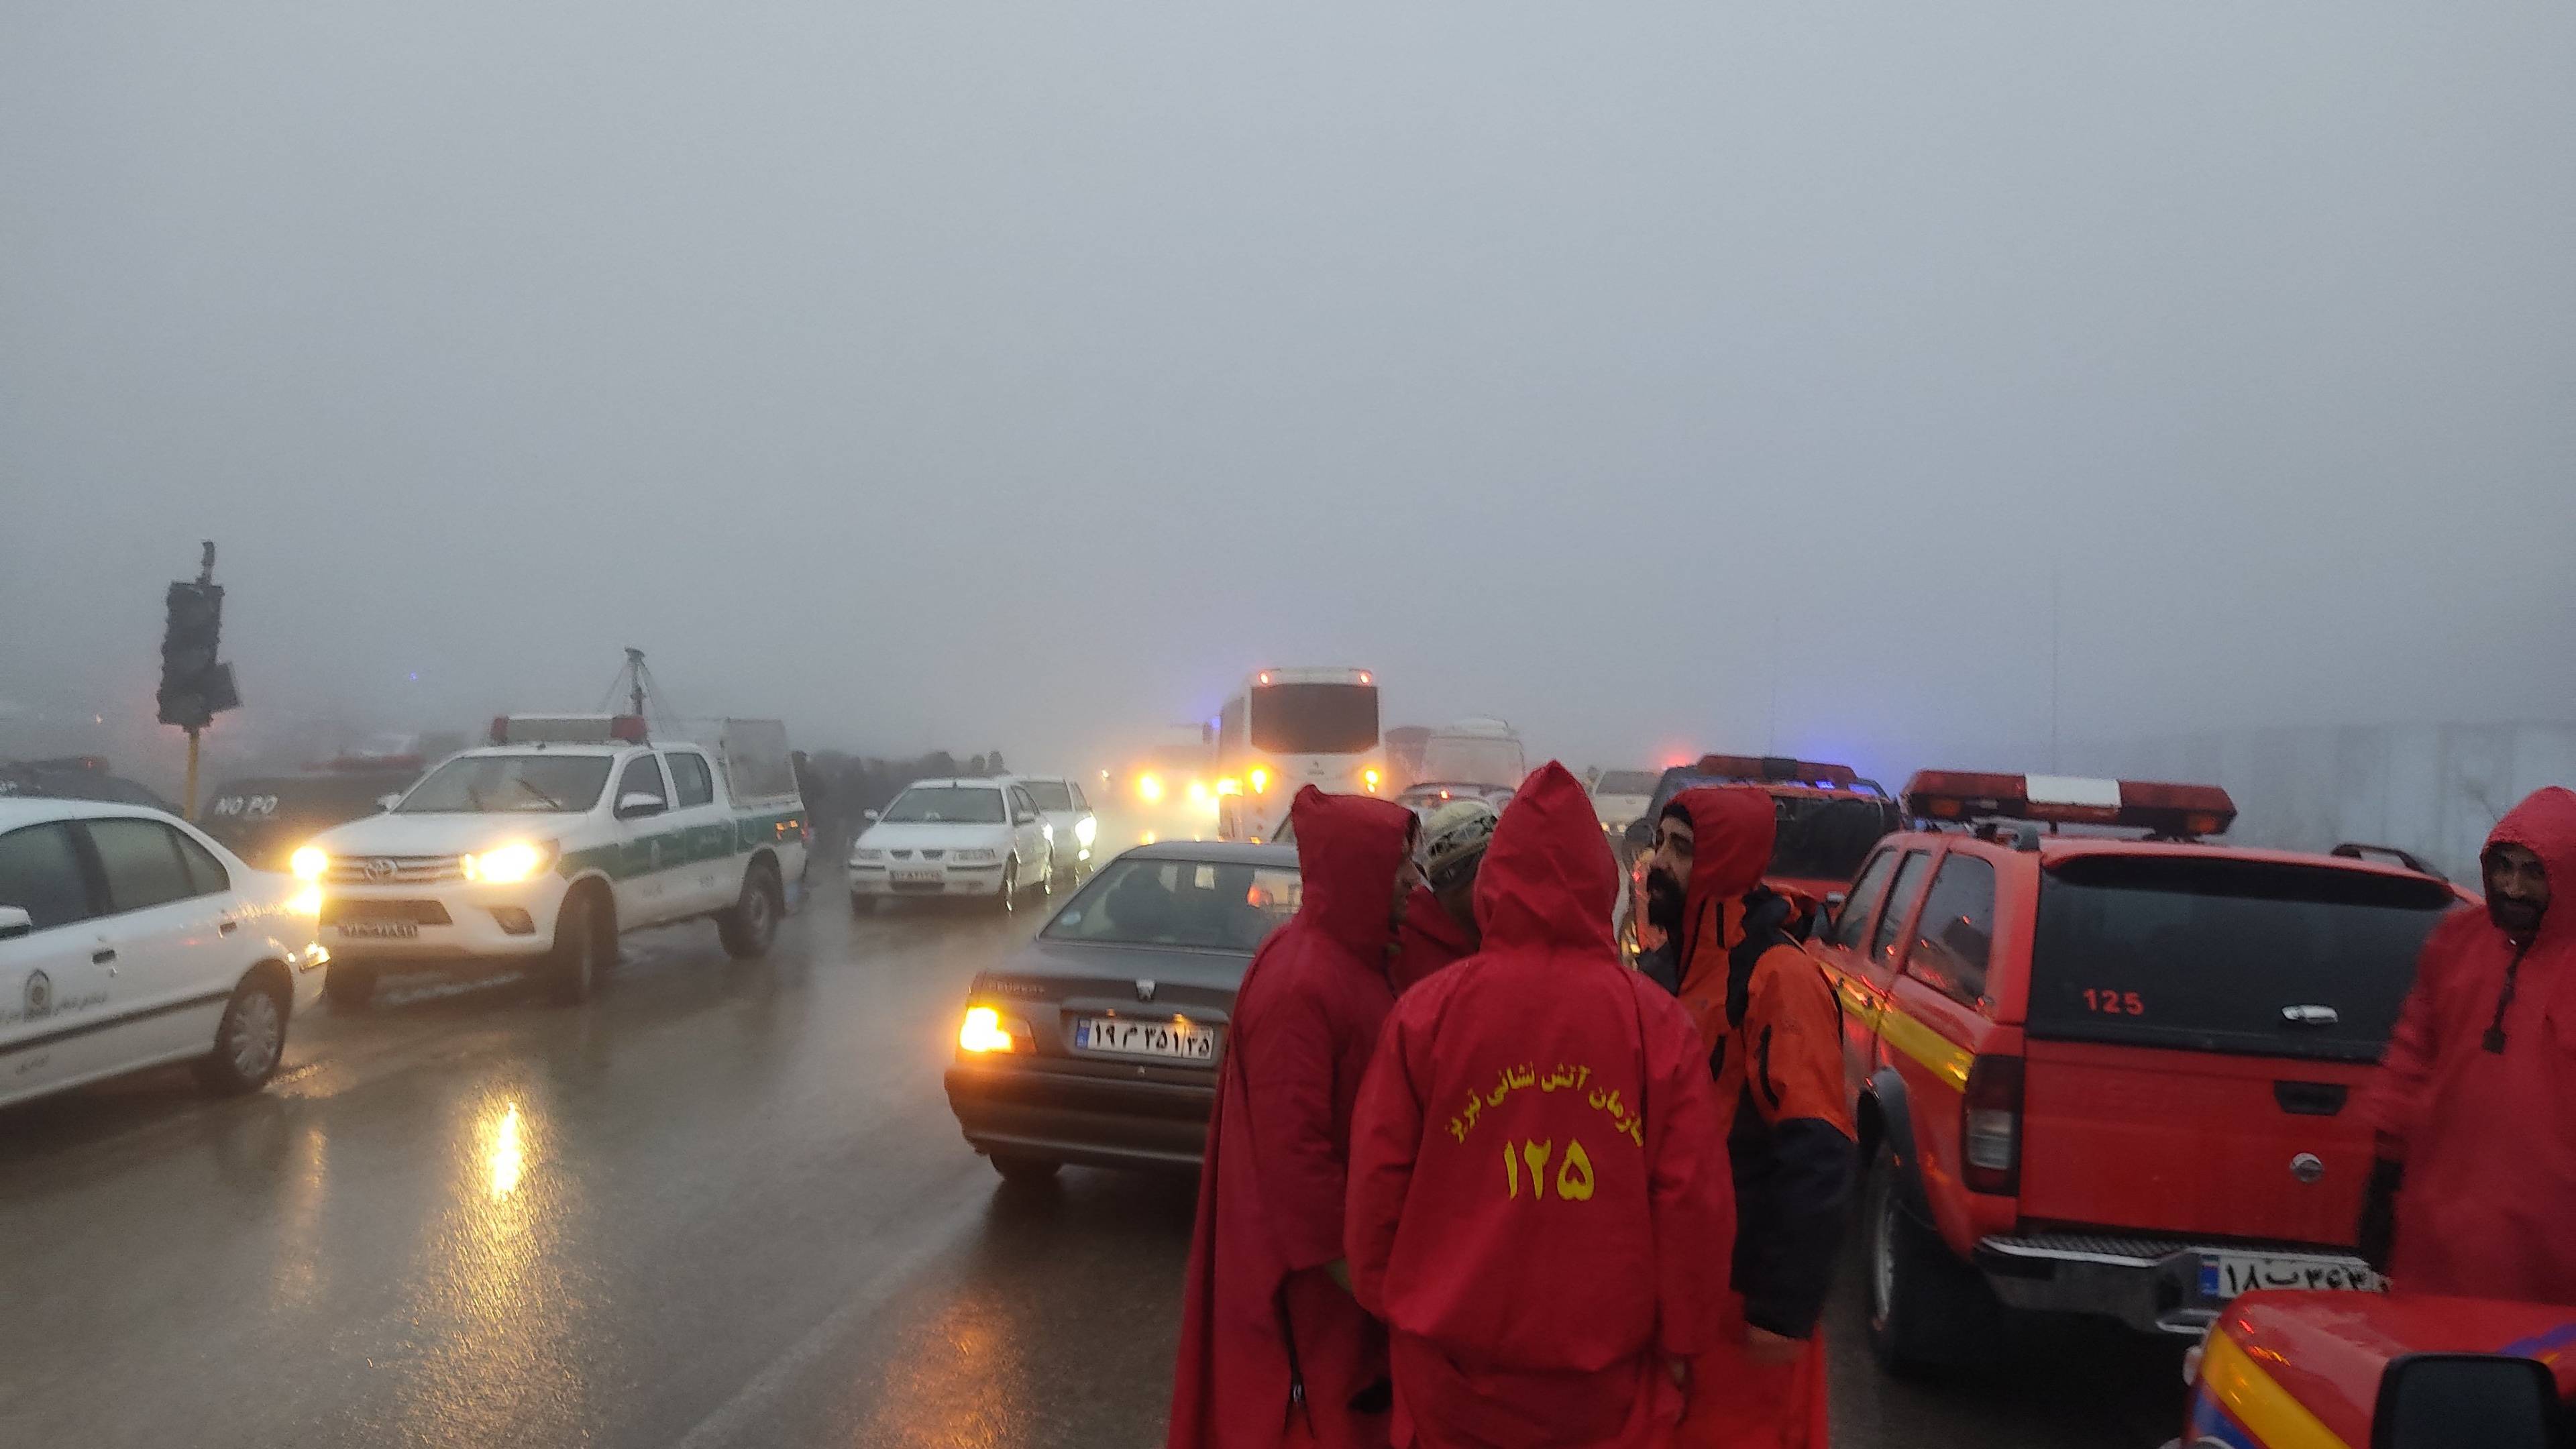 Ratownicy w czerwonych kurtkach stoją na drodze we mgle. w tle widać samochody terenowe